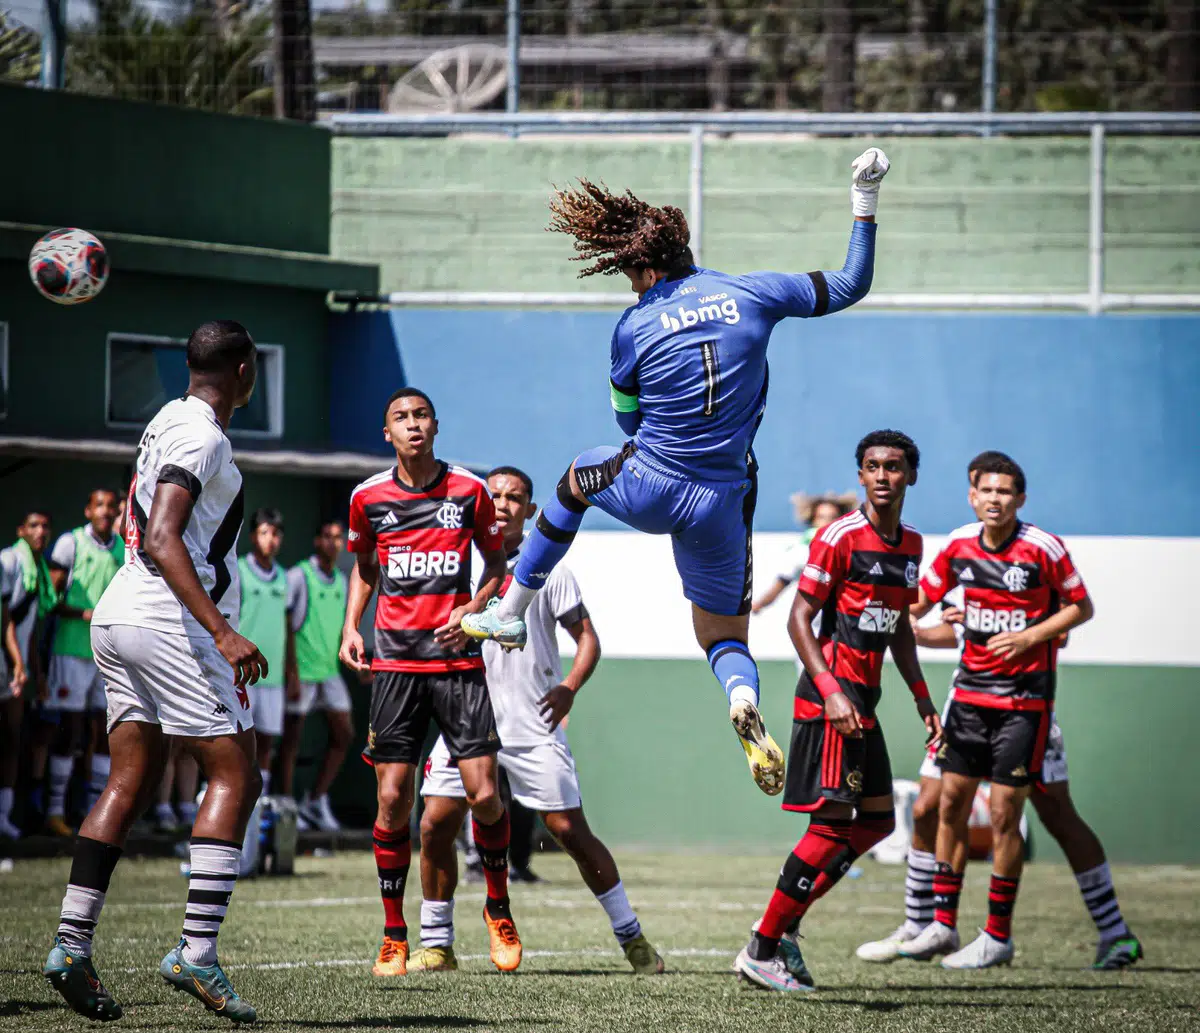 Phillipe Gabriel faz gol, pega três pênaltis e Sub-17 vence o Flamengo nos  pênaltis – Vasco da Gama